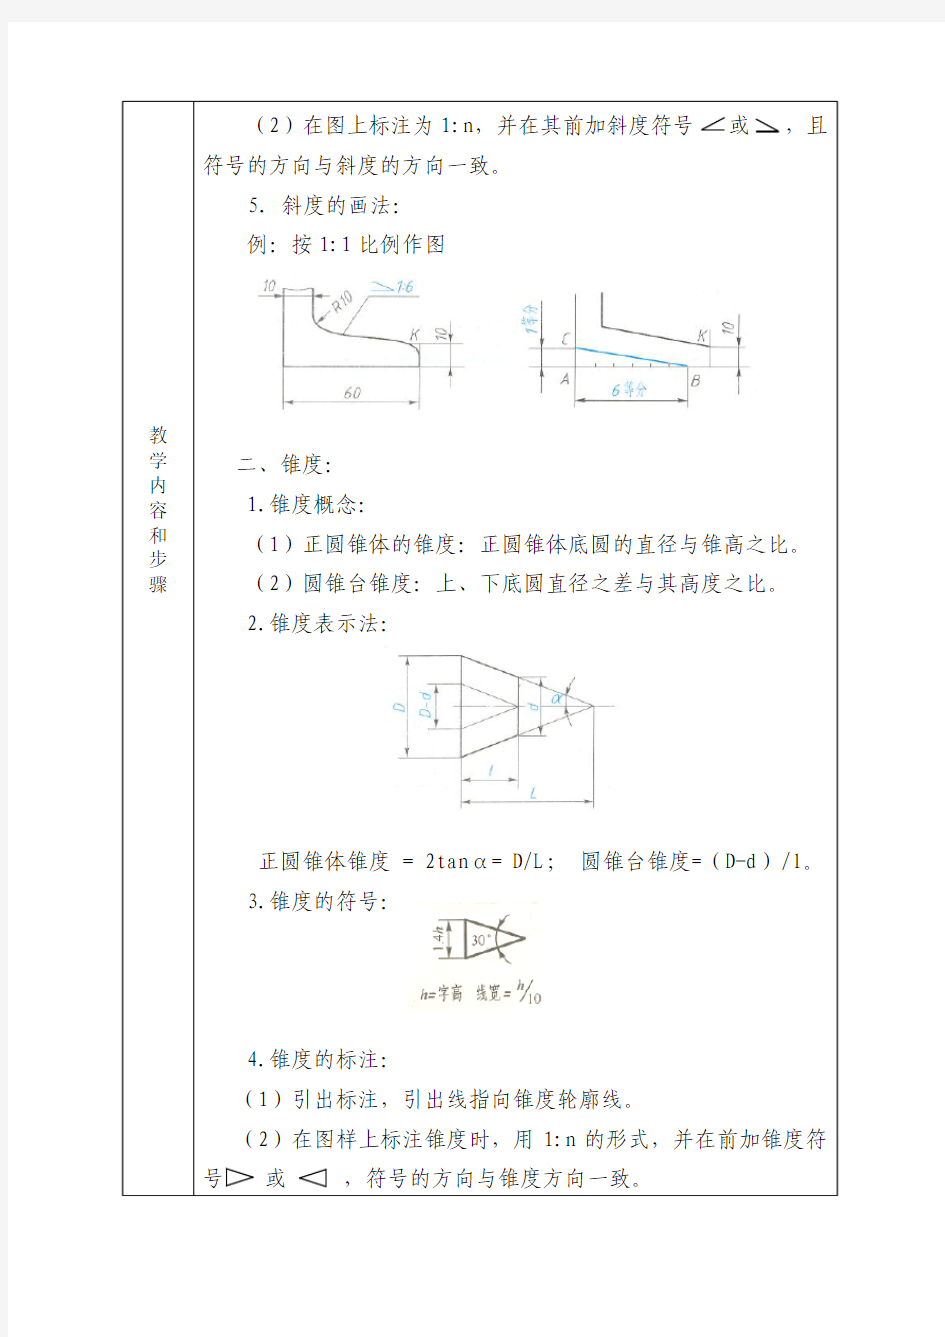 机械制图--第一章   第四节  常见几何图形画法(斜度和锥度)